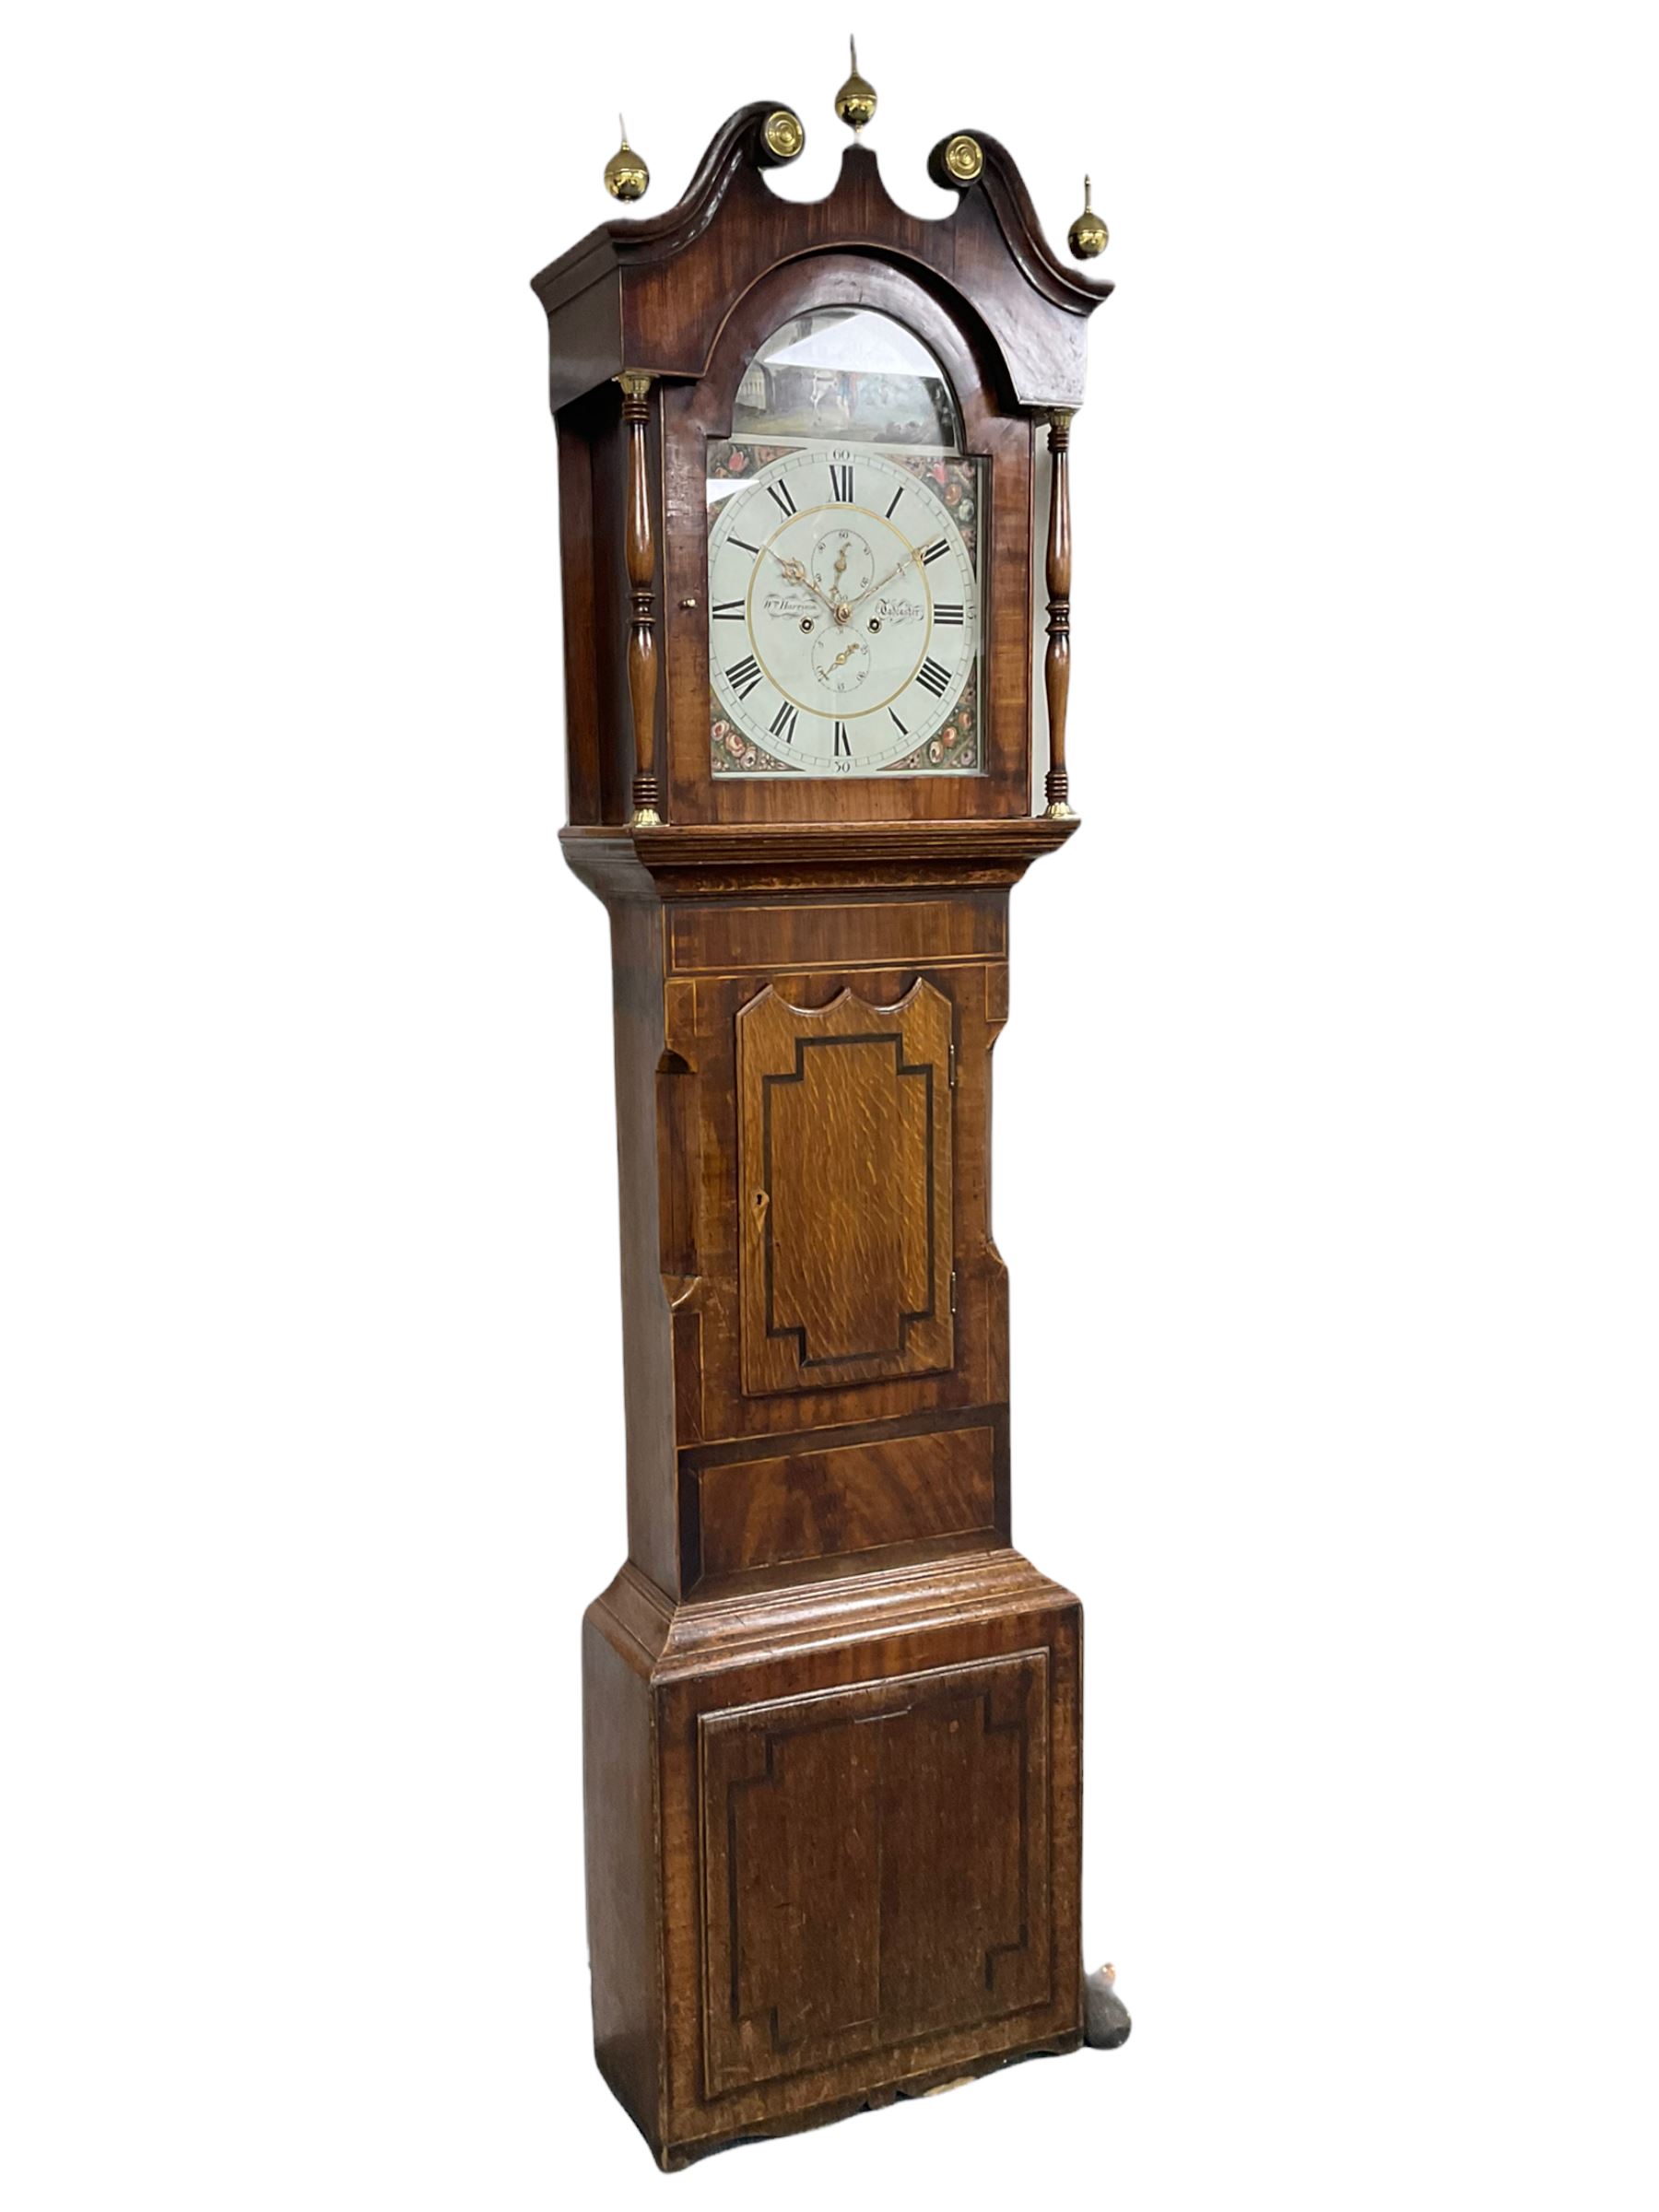 A mid-19th century oak and mahogany longcase clock by “ Wm Harrison, Tadcaster”,